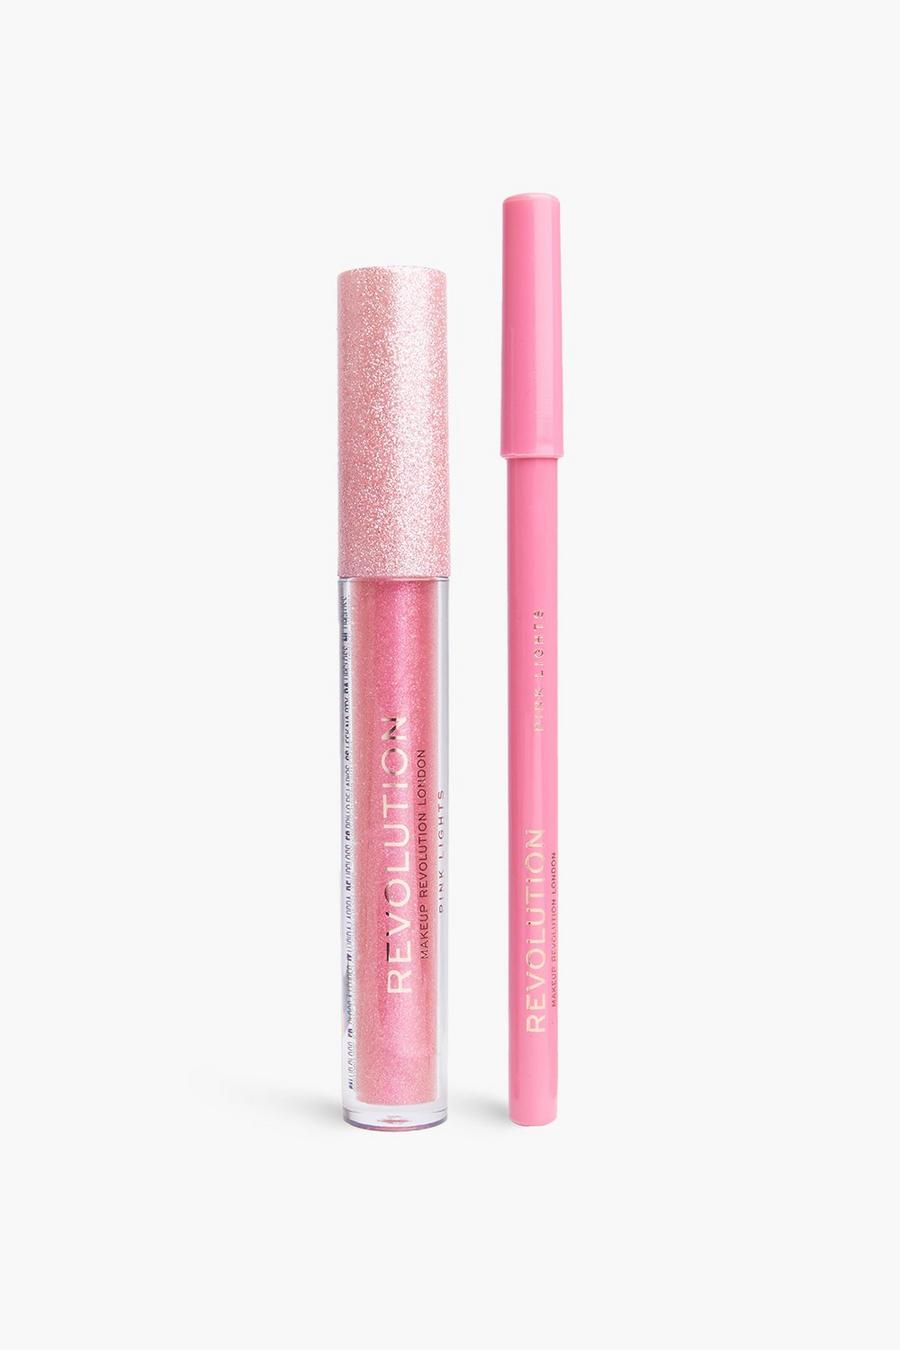 Pink lights Revolution Ultimate Lights Shimmer Lip Kit